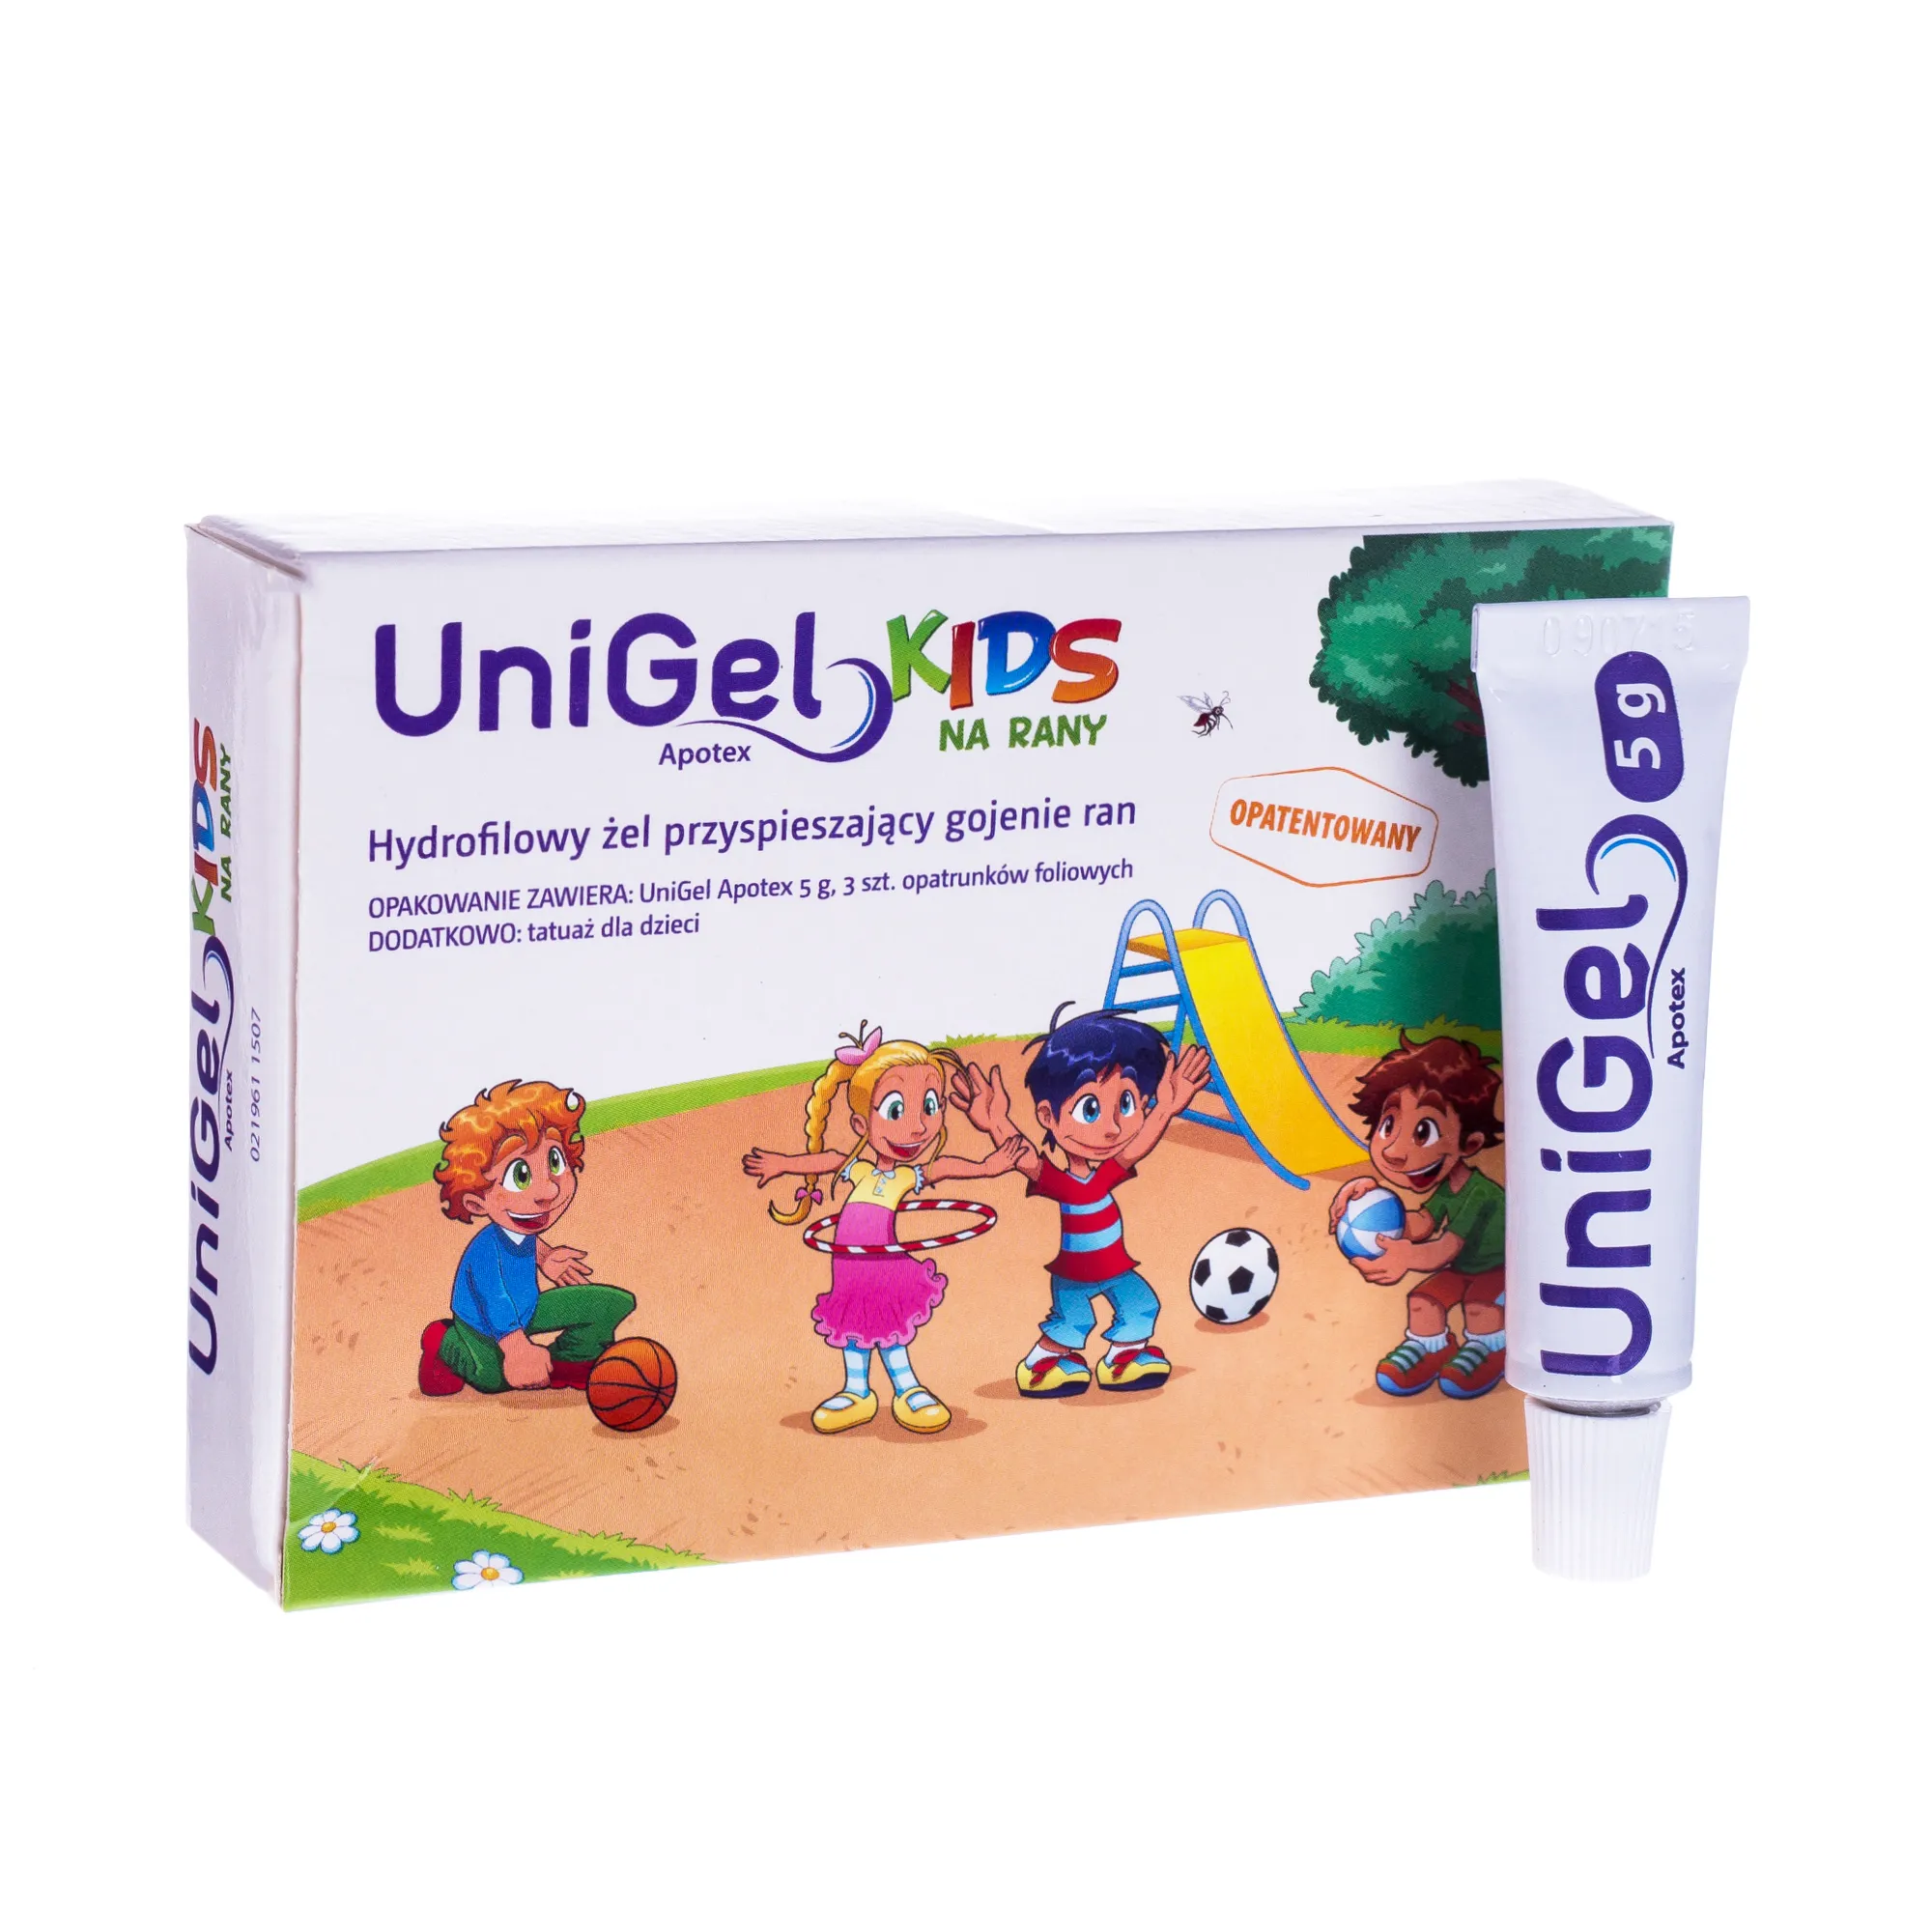 Unigel Apotex Kids na rany, żel przyspieszający gojenie ran, 5 g